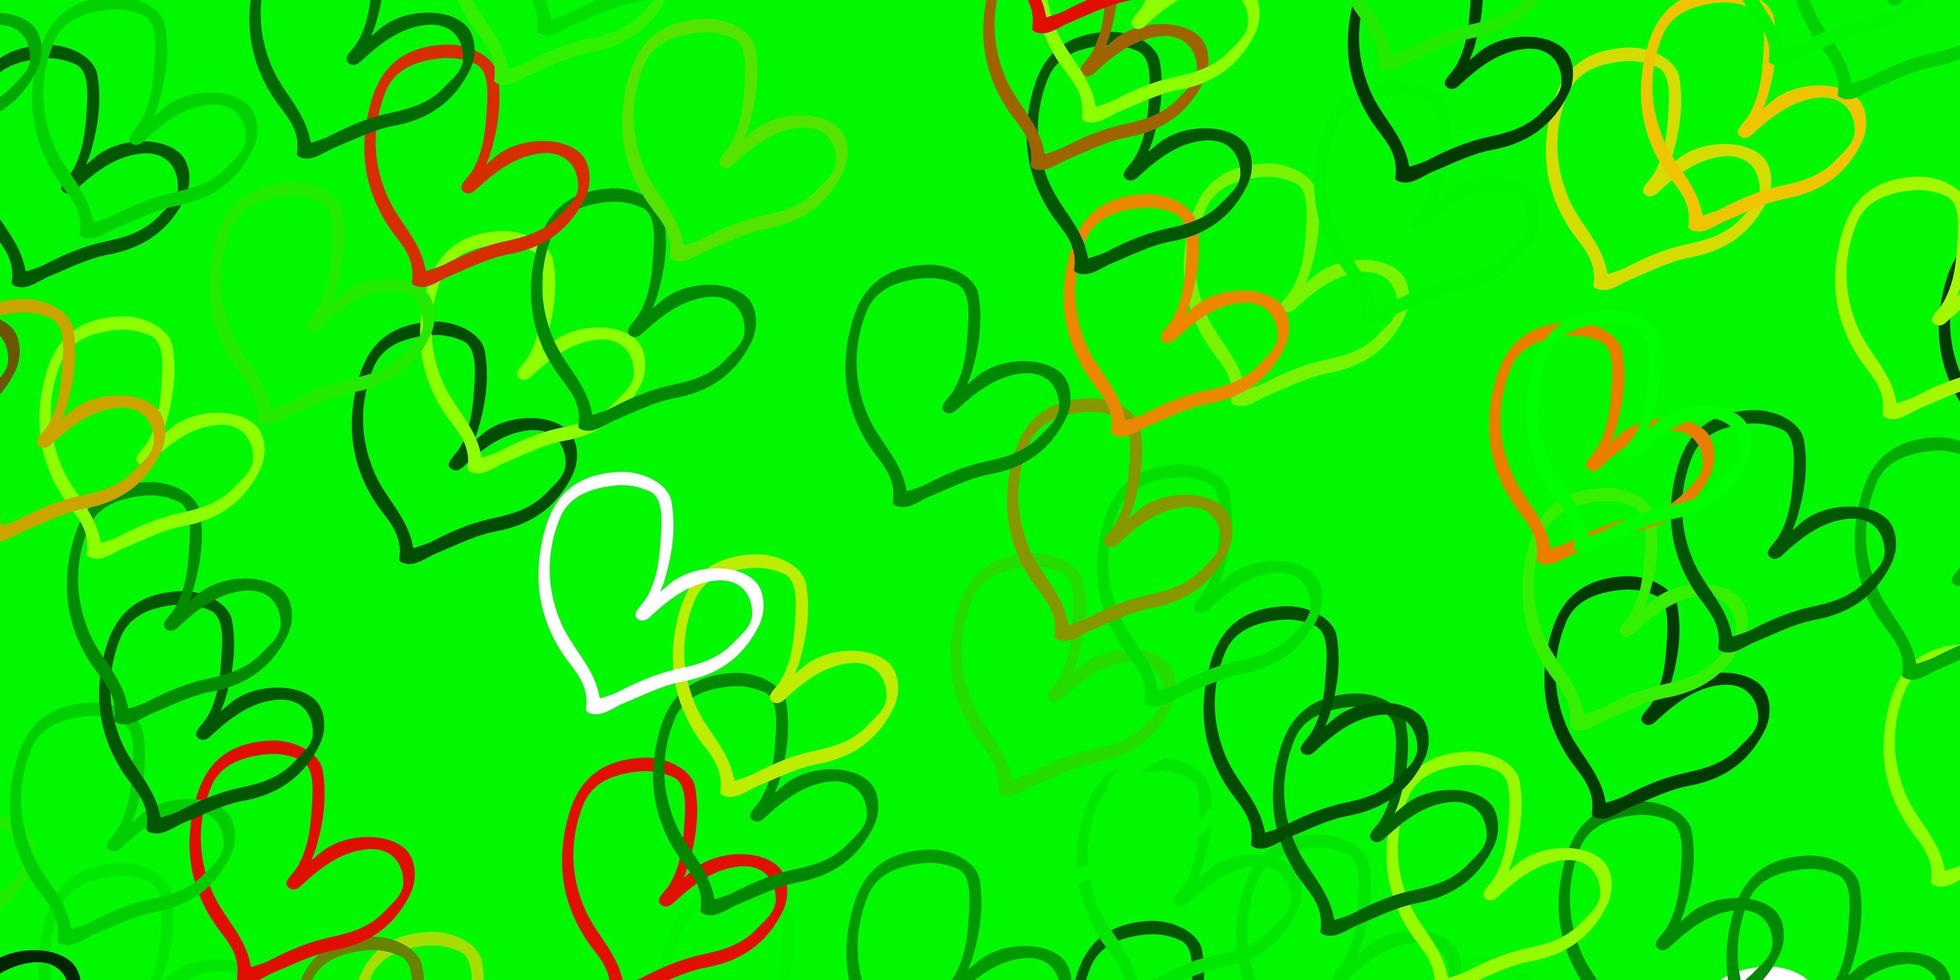 modelo de vetor verde e amarelo claro com corações de doodle.